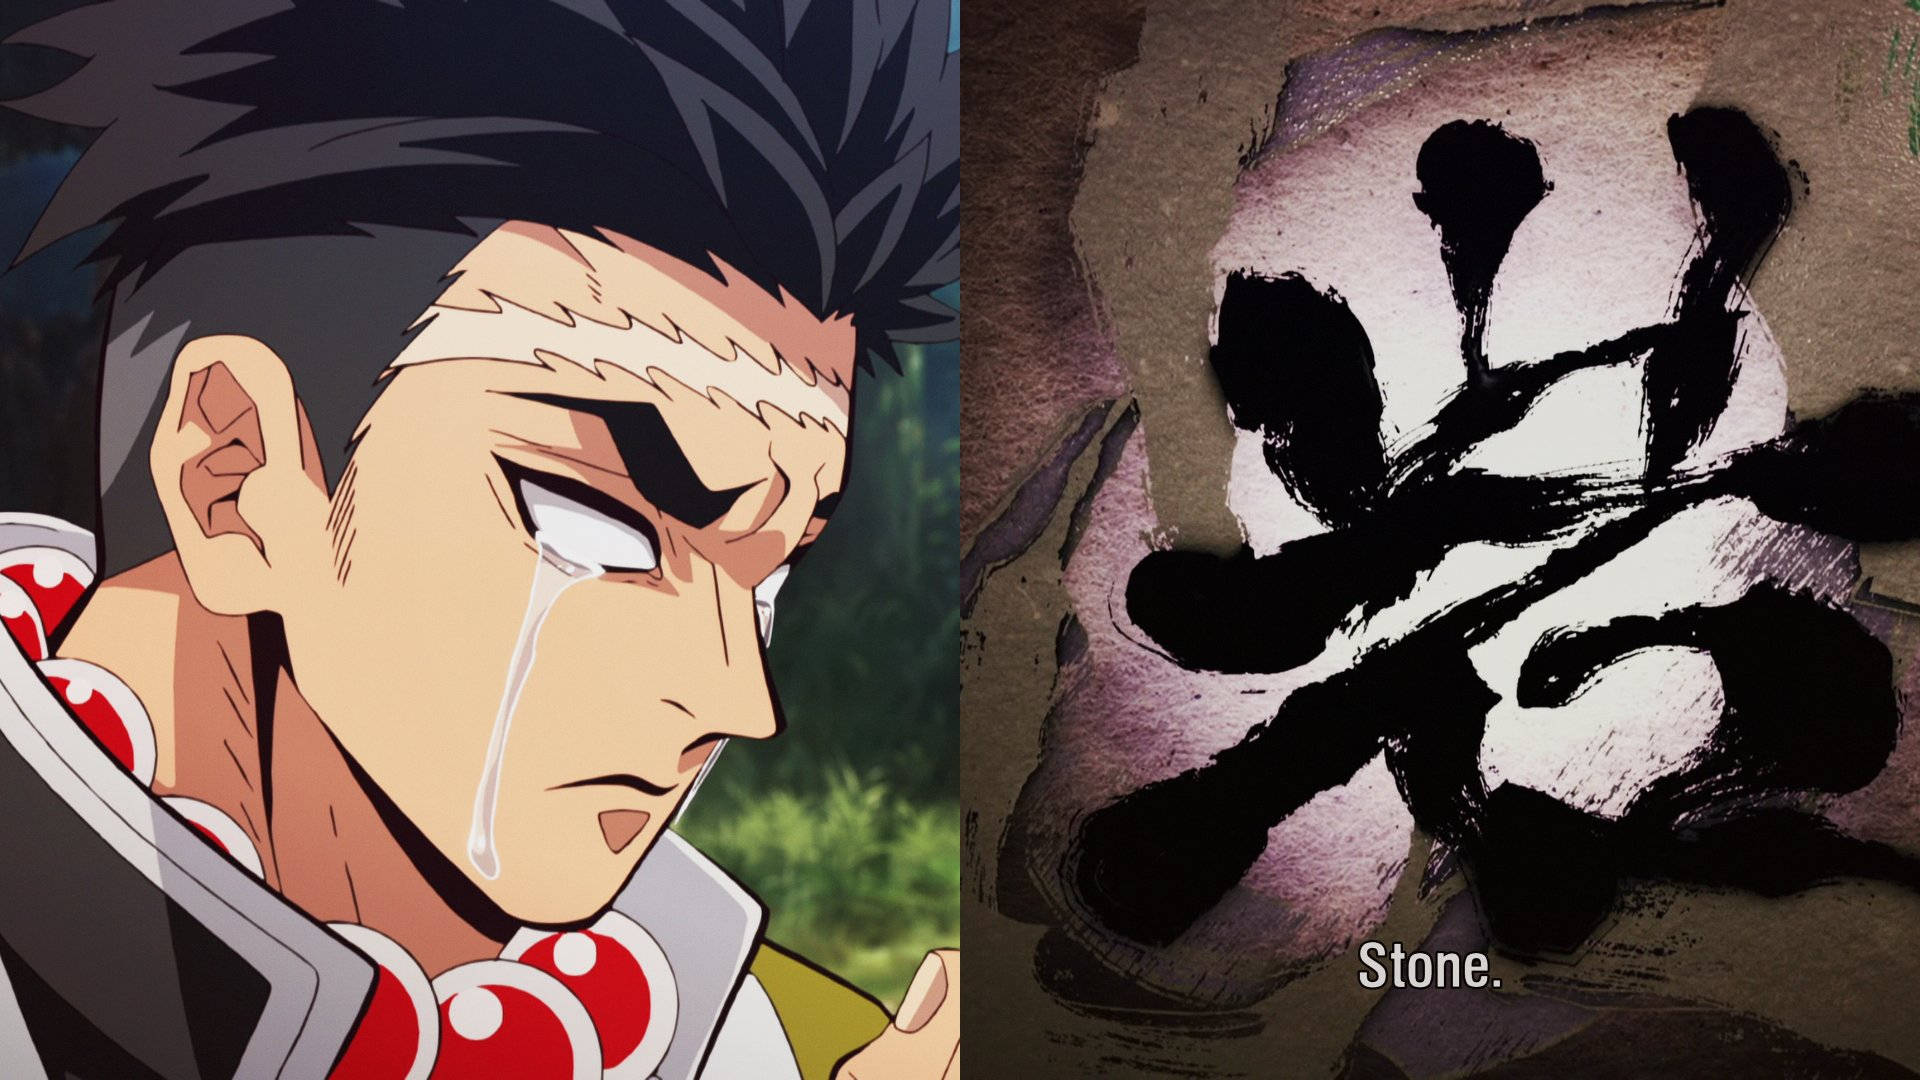 Gyomei Himejima And Stone Sign Background